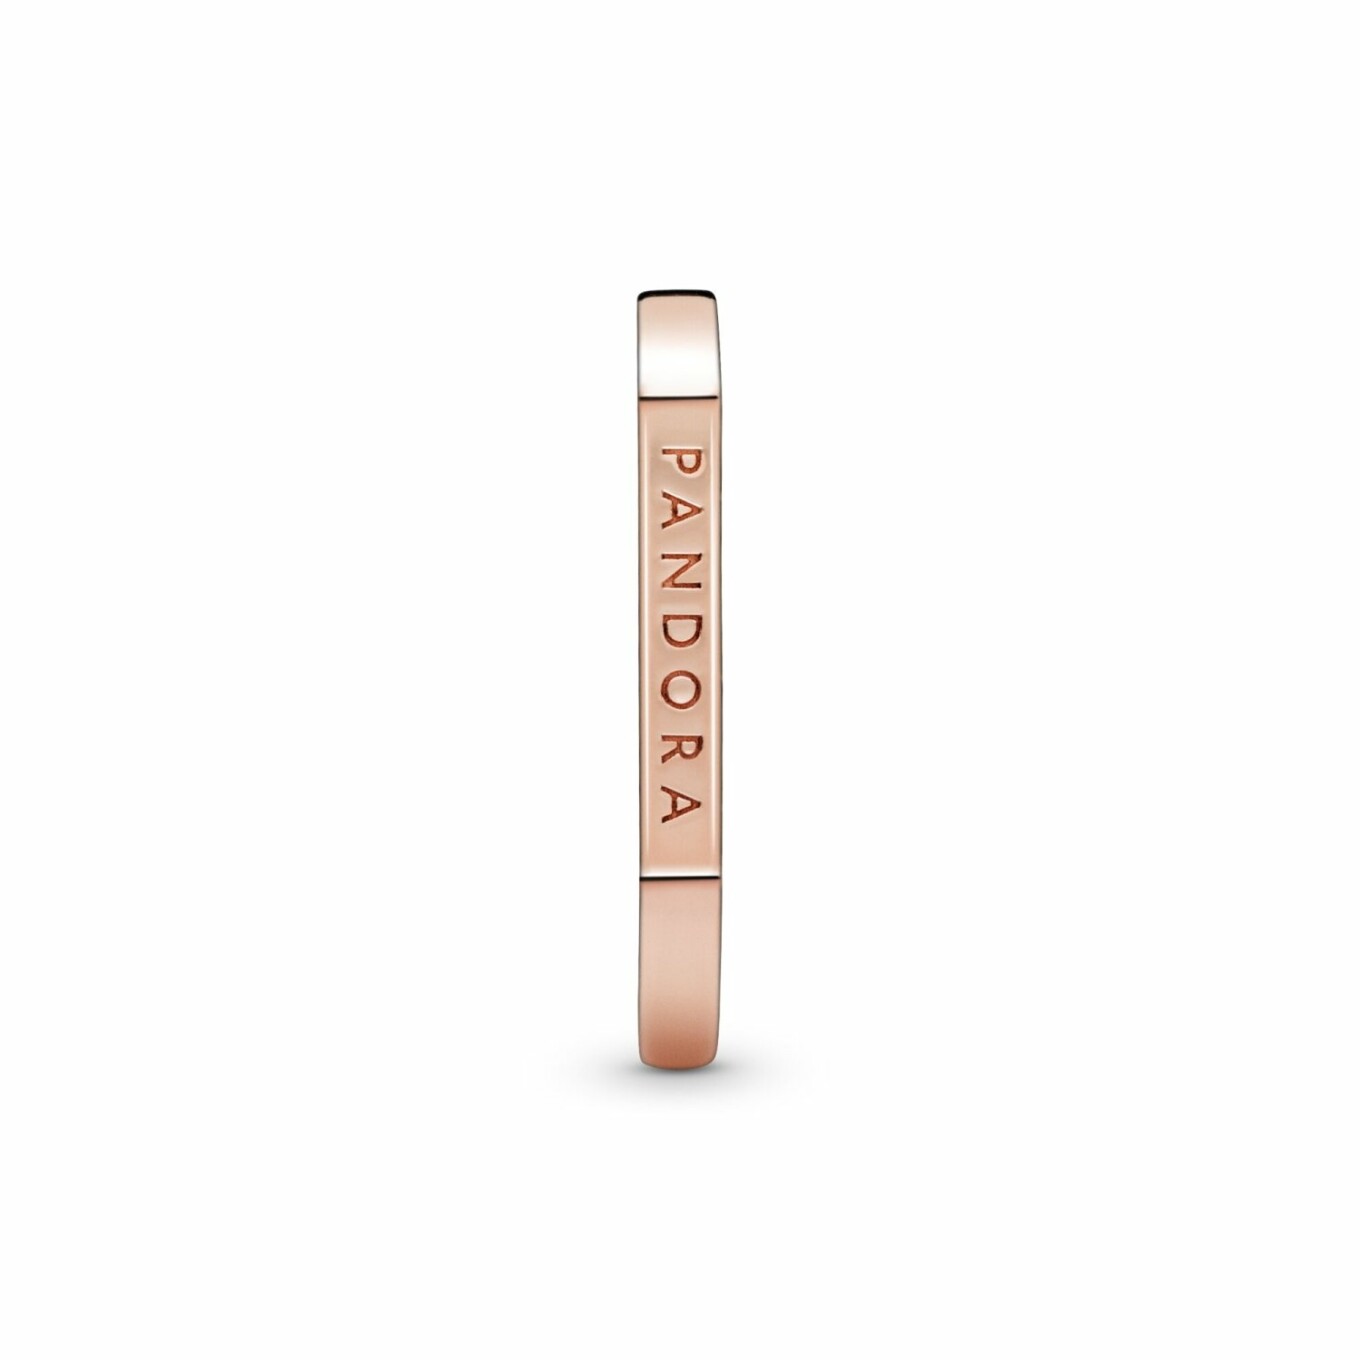 Bague Pandora Signature empilable barre logo en métal doré rose, taille 52